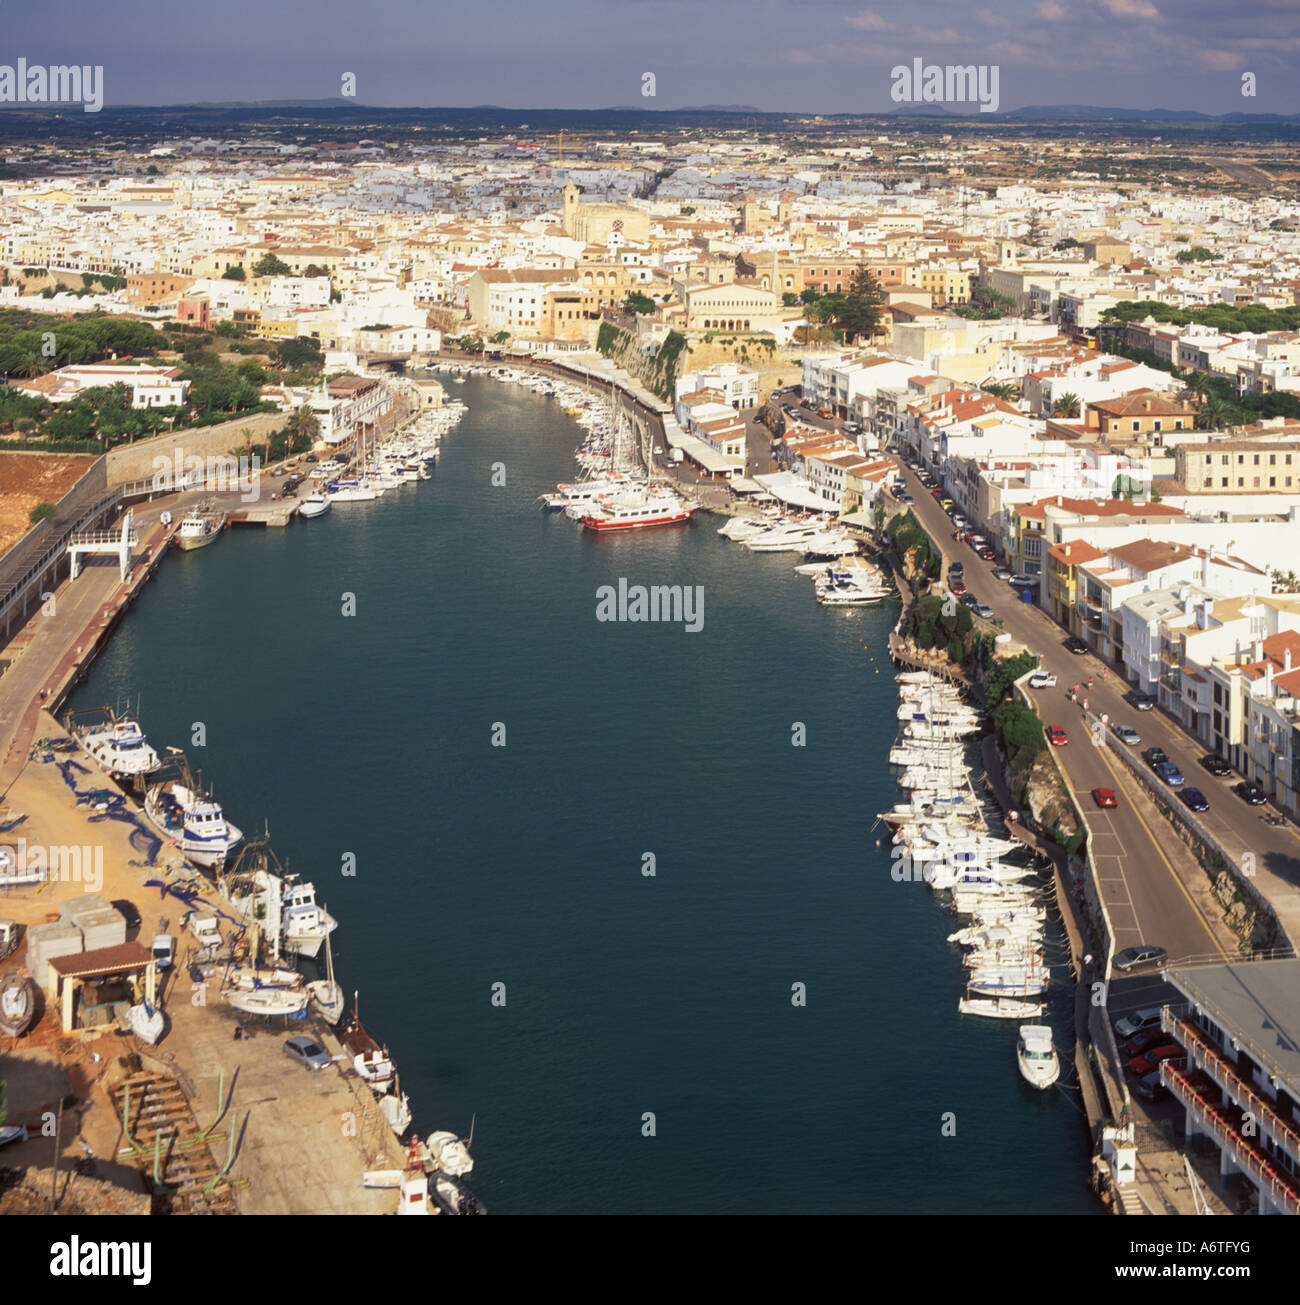 Vista aérea - Mirando al noreste a través del puerto / Puerto de la Ciutadella, Menorca. Foto de stock